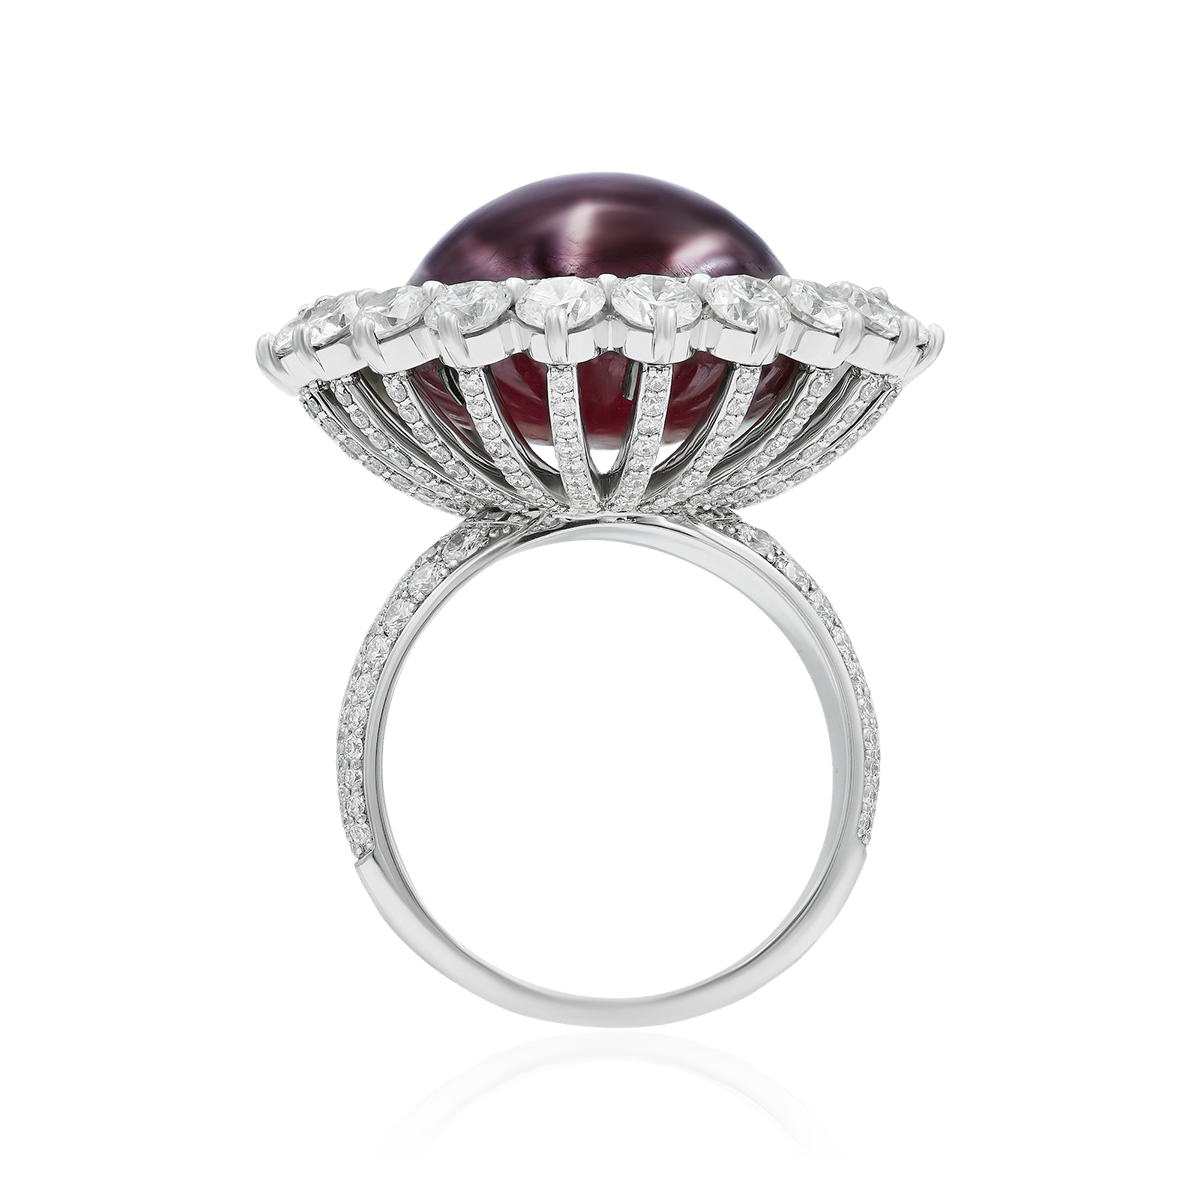 Кольцо с рубином, бриллиантами из белого золота 750 пробы, фото № 4